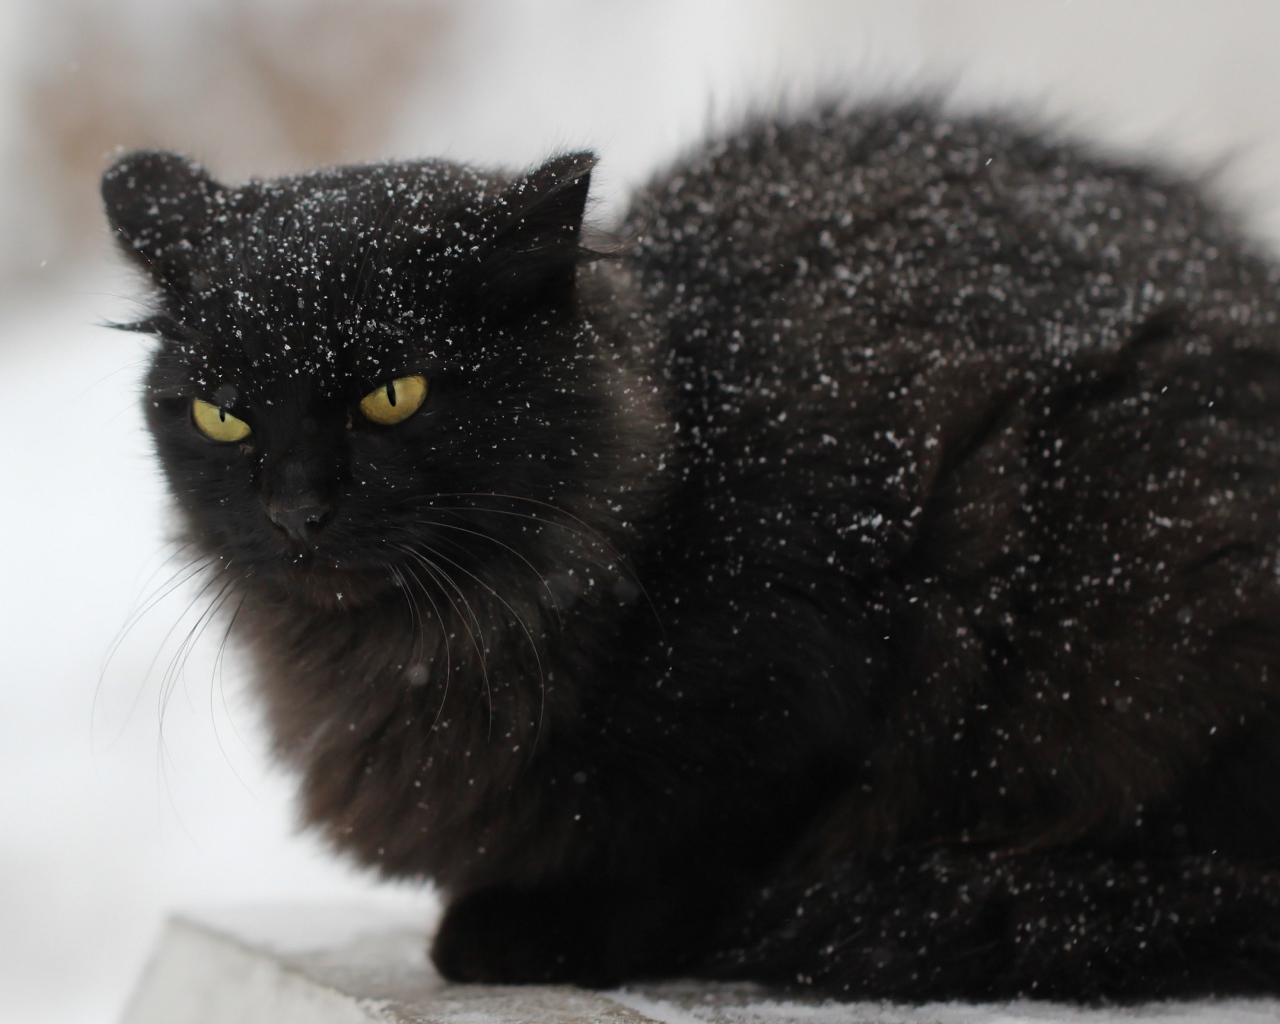 Недовольный черный кот в снегу на улице